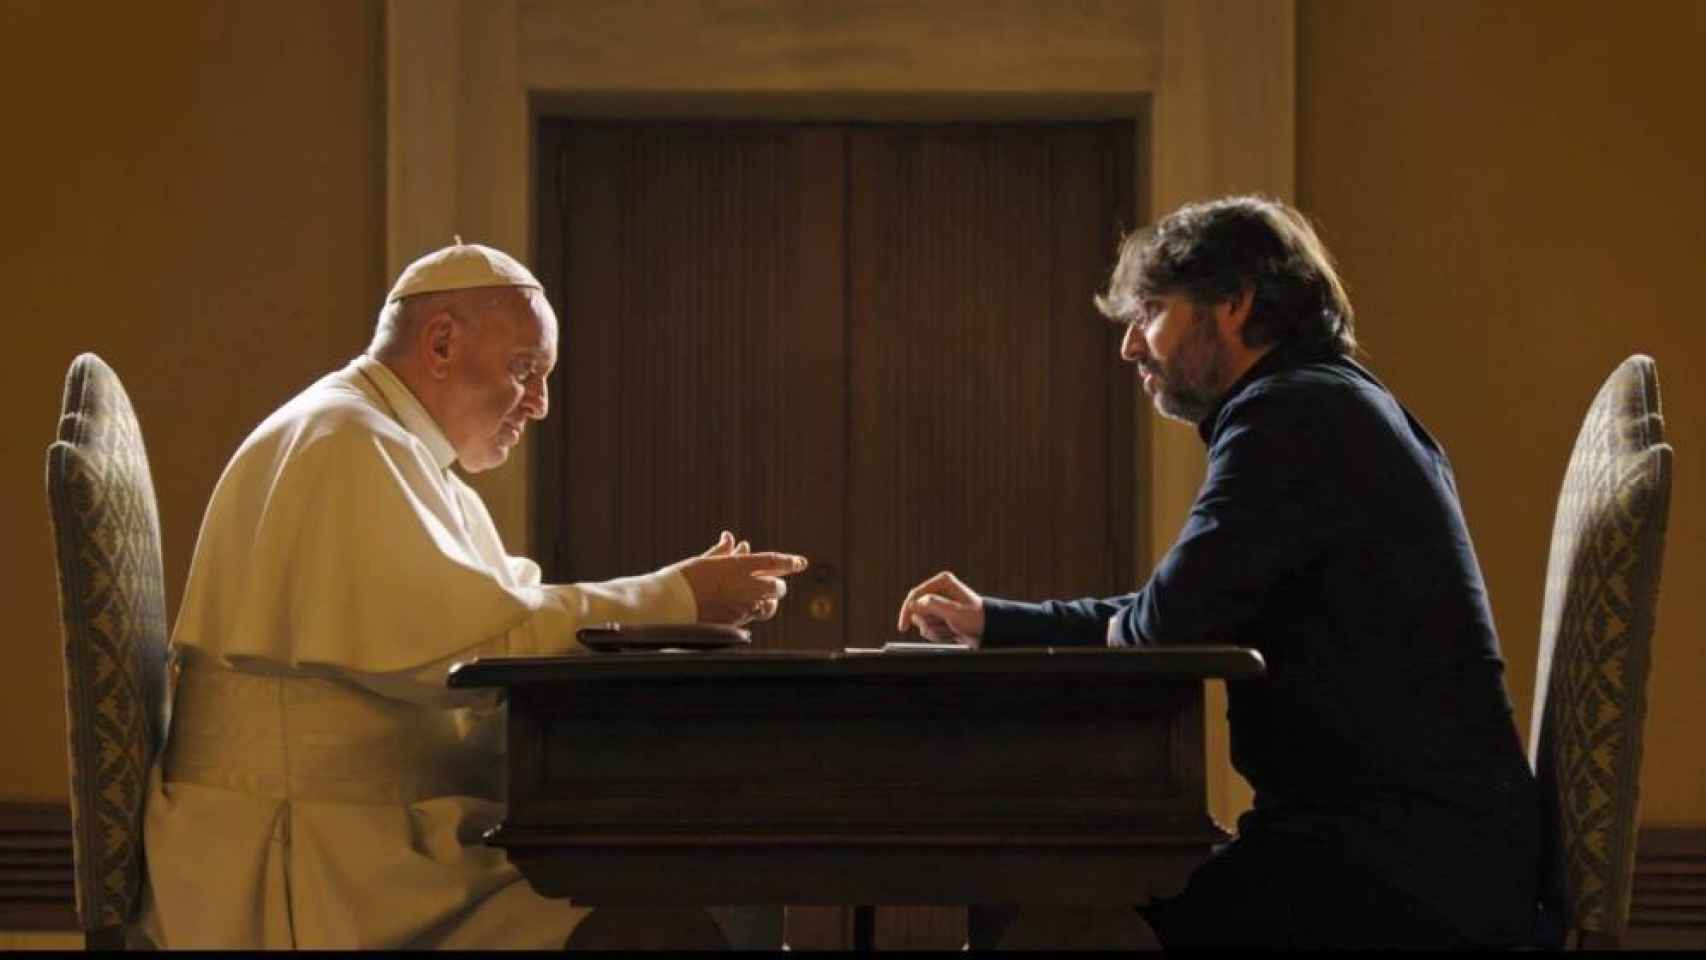 El Papa y Évole durante la entrevista que se emitirá este domingo en 'Salvados'